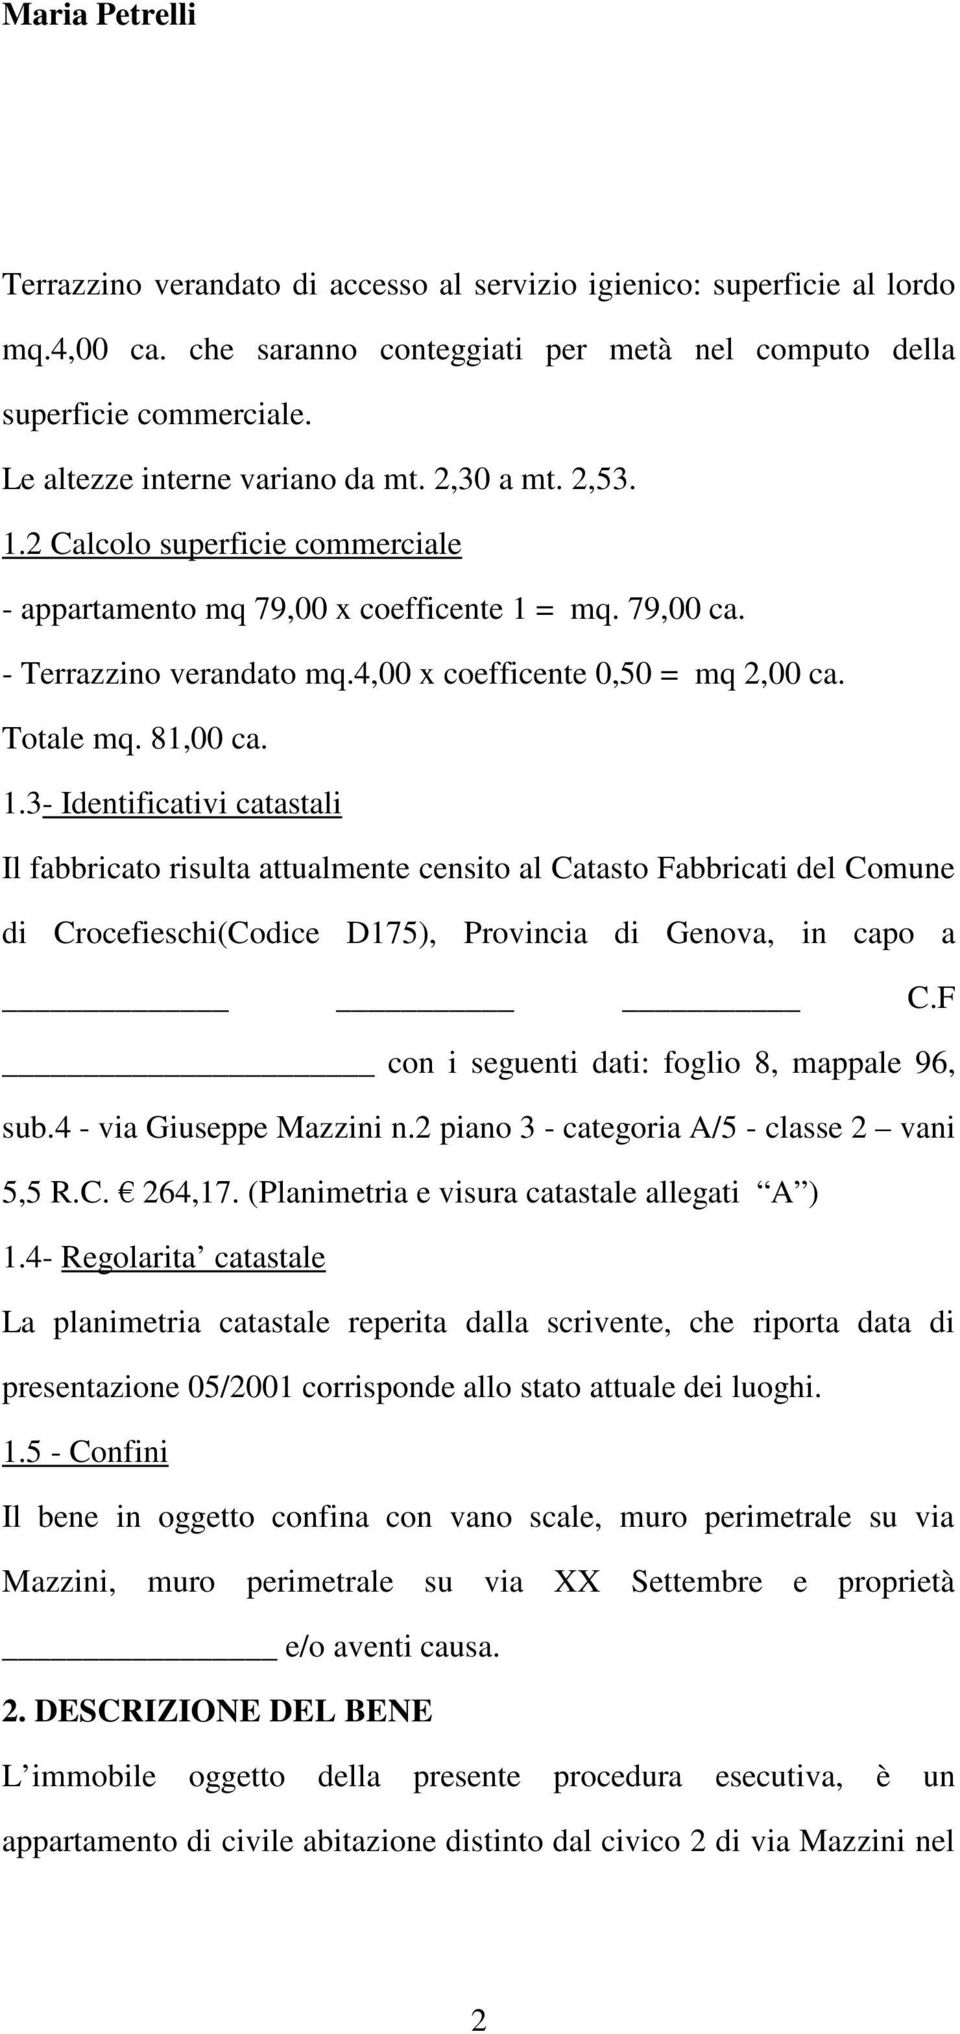 F con i seguenti dati: foglio 8, mappale 96, sub.4 - via Giuseppe Mazzini n.2 piano 3 - categoria A/5 - classe 2 vani 5,5 R.C. 264,17. (Planimetria e visura catastale allegati A ) 1.